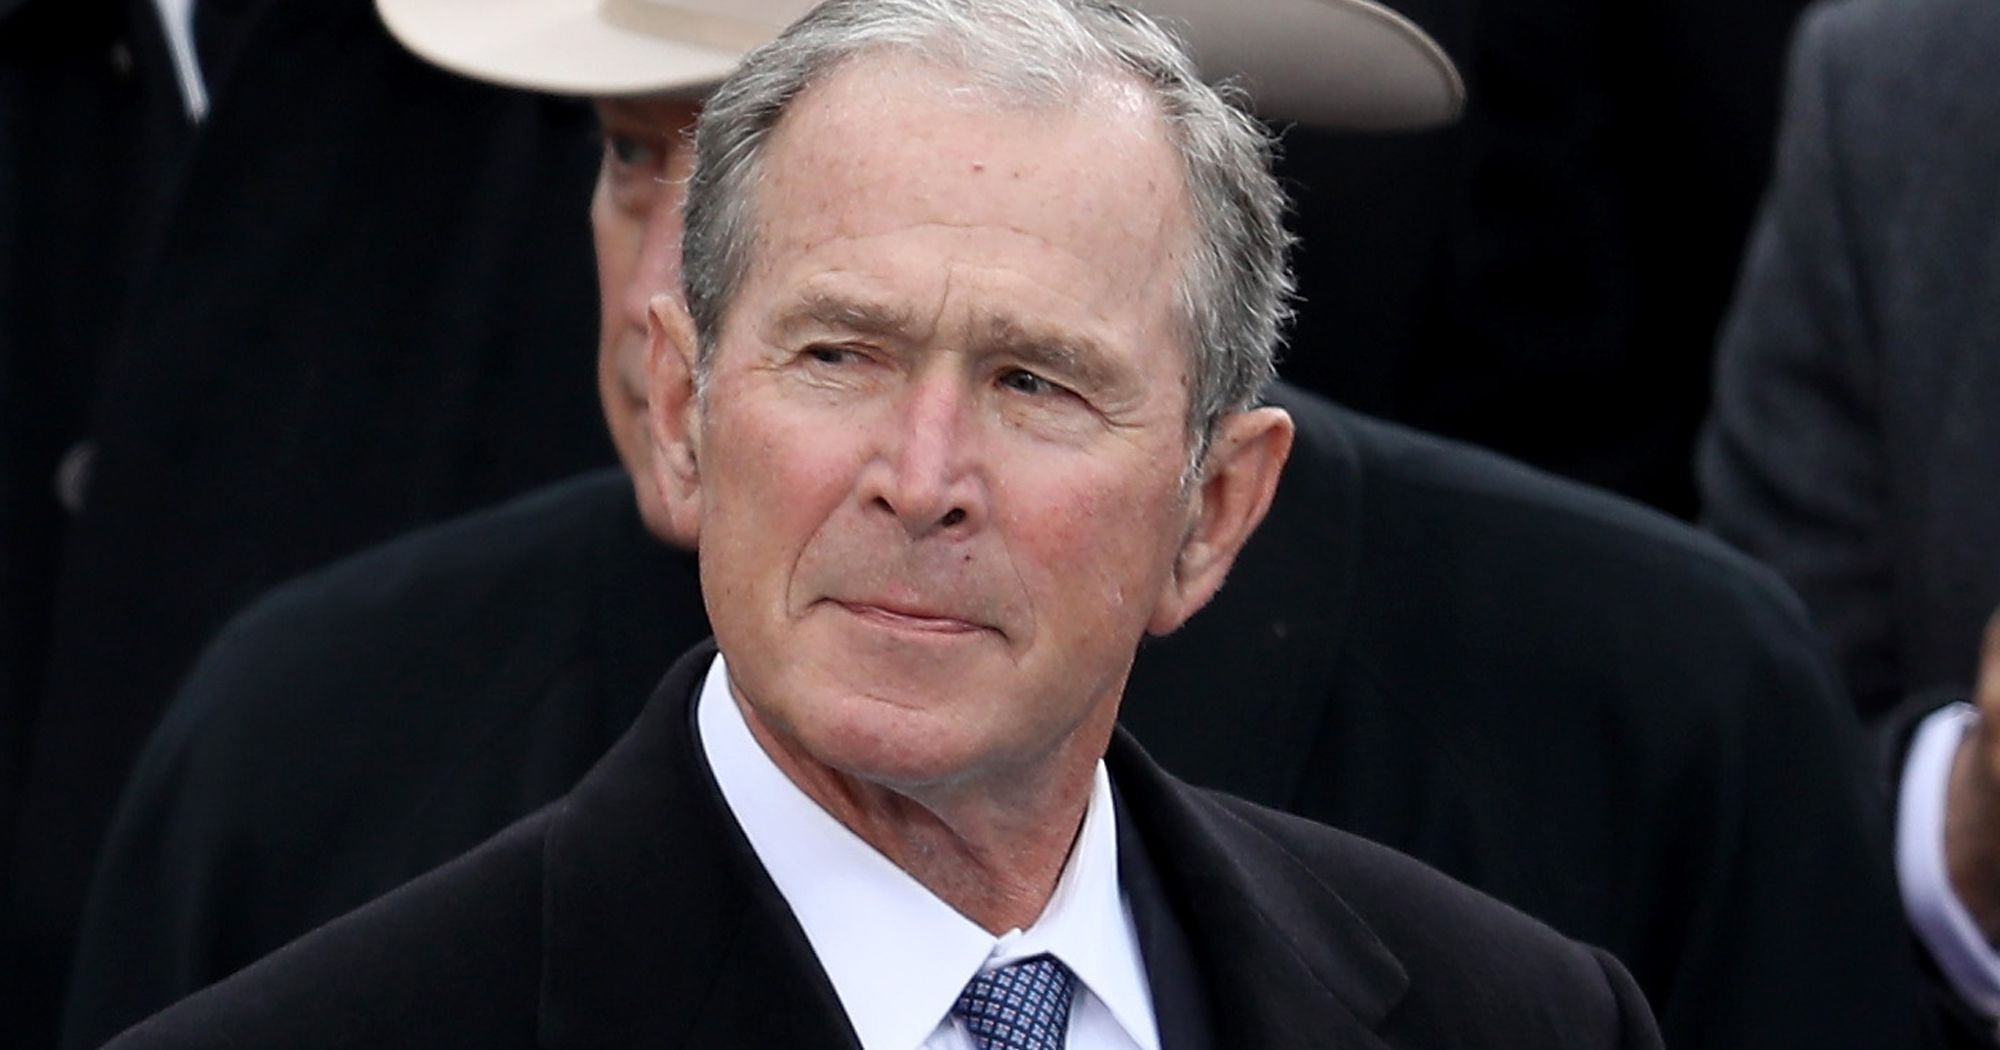 Expresidente Bush felicita a Biden por su victoria en unos comicios “justos” e “íntegros”